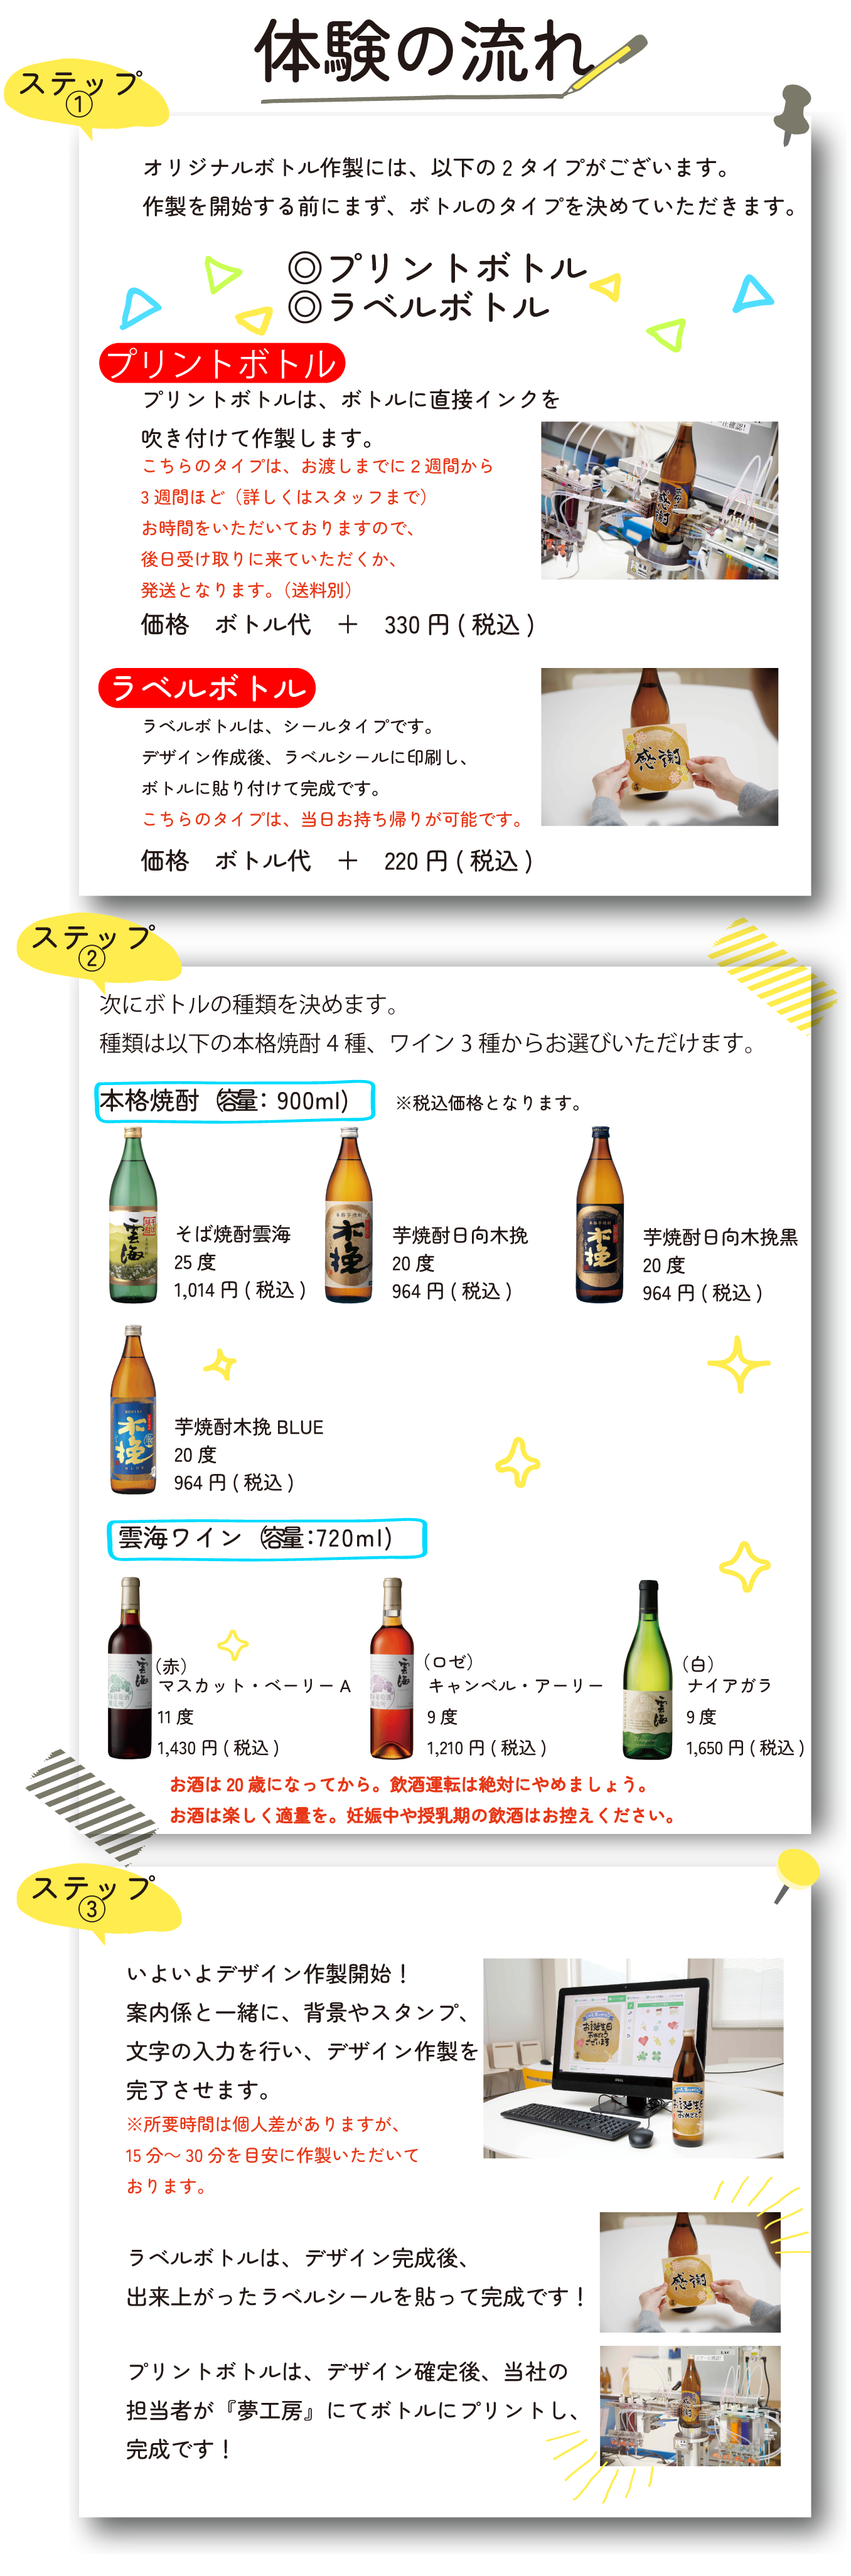 【WEB】オリジナルボトル作製(20221001)